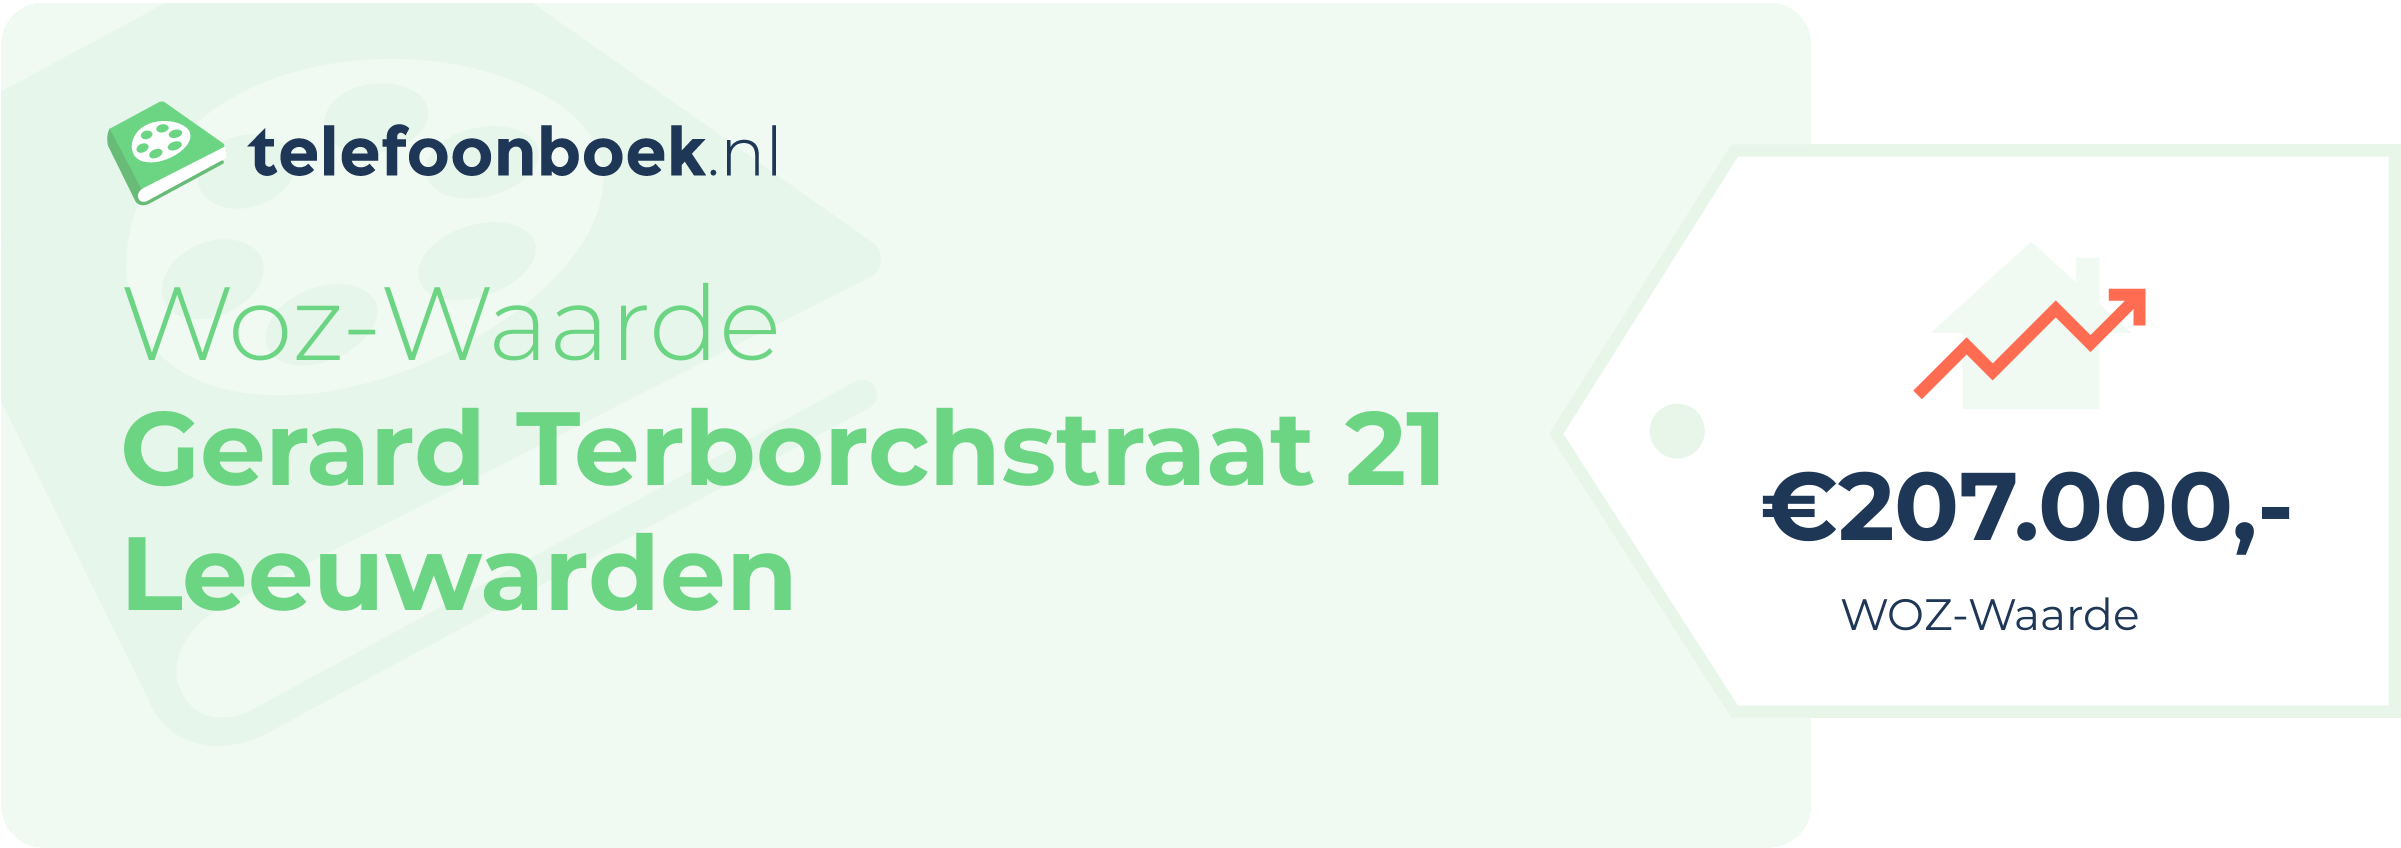 WOZ-waarde Gerard Terborchstraat 21 Leeuwarden